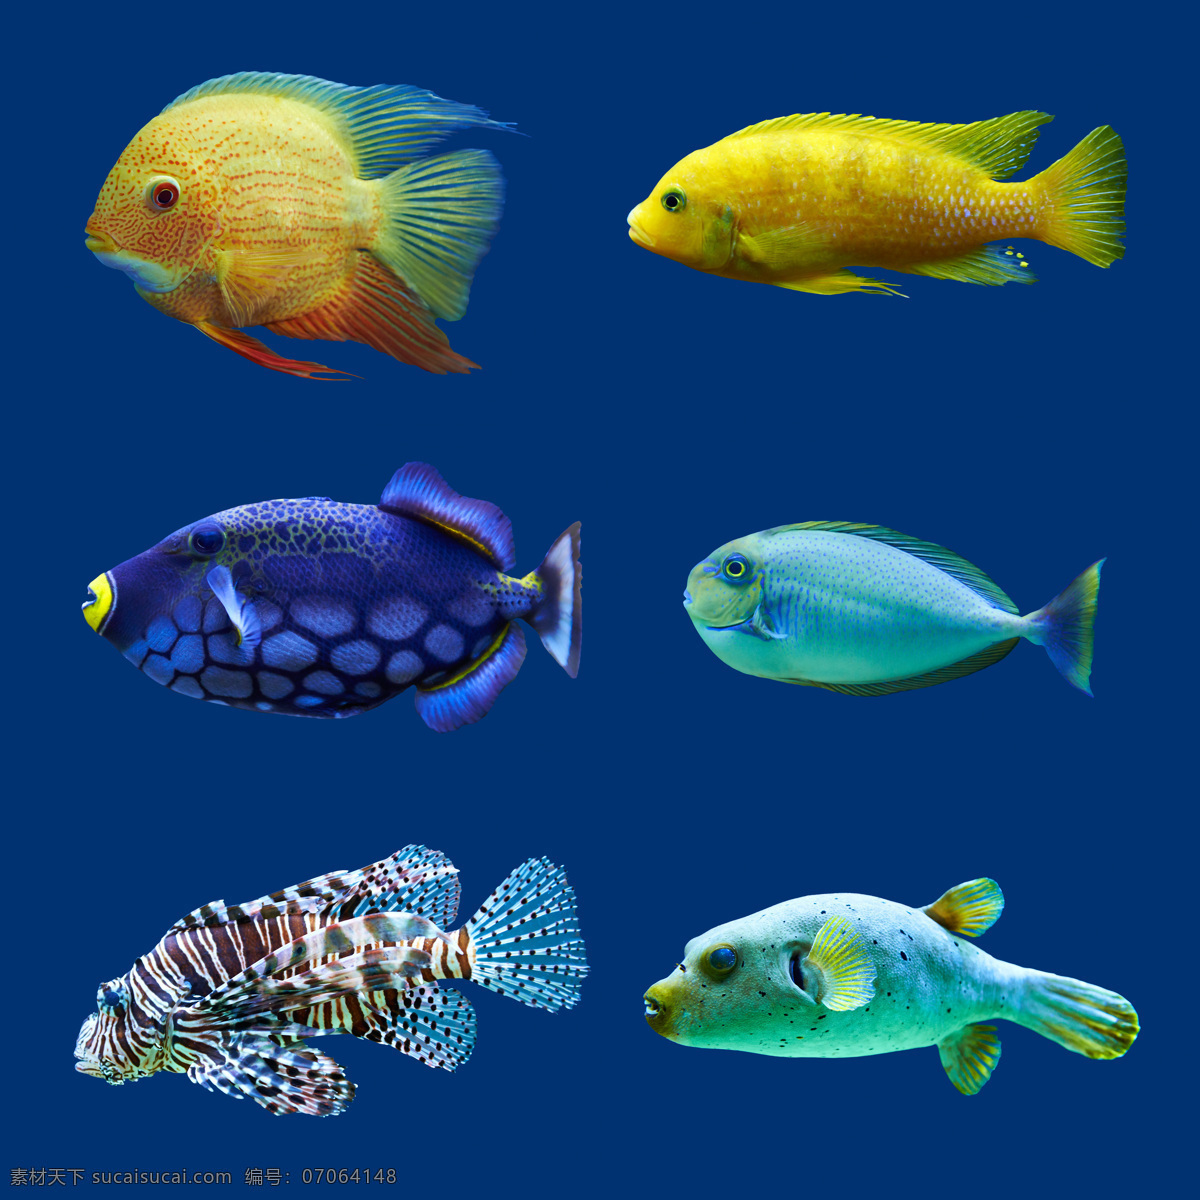 小鱼 种类 大全 高清 热带鱼 彩色 海洋鱼类 彩色鱼 鱼儿 鱼类 漂亮的鱼 海洋生物 动物图片 蓝色